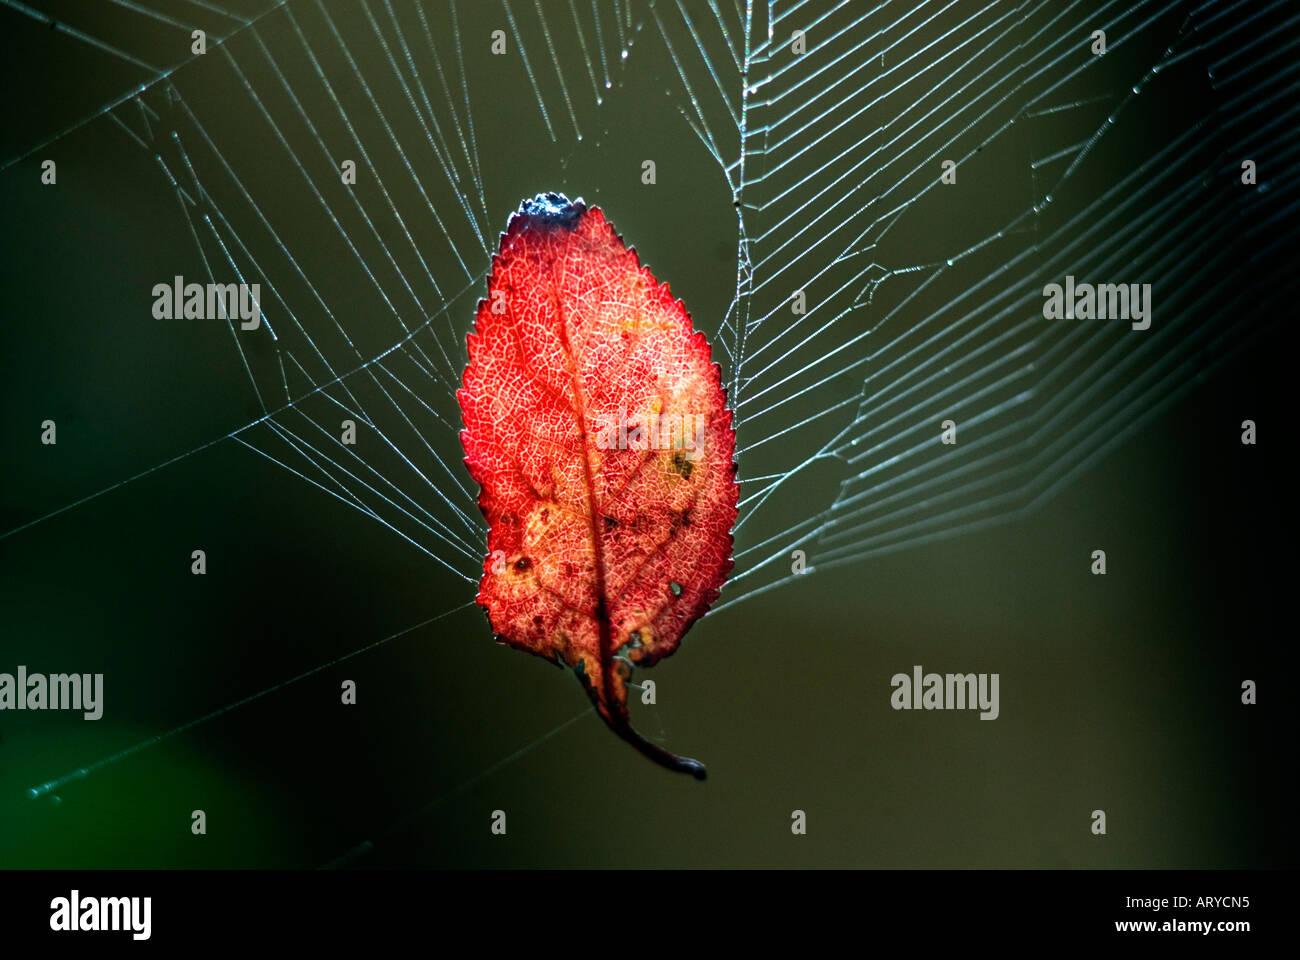 Autumn leaf caught in garden spider s web Stock Photo